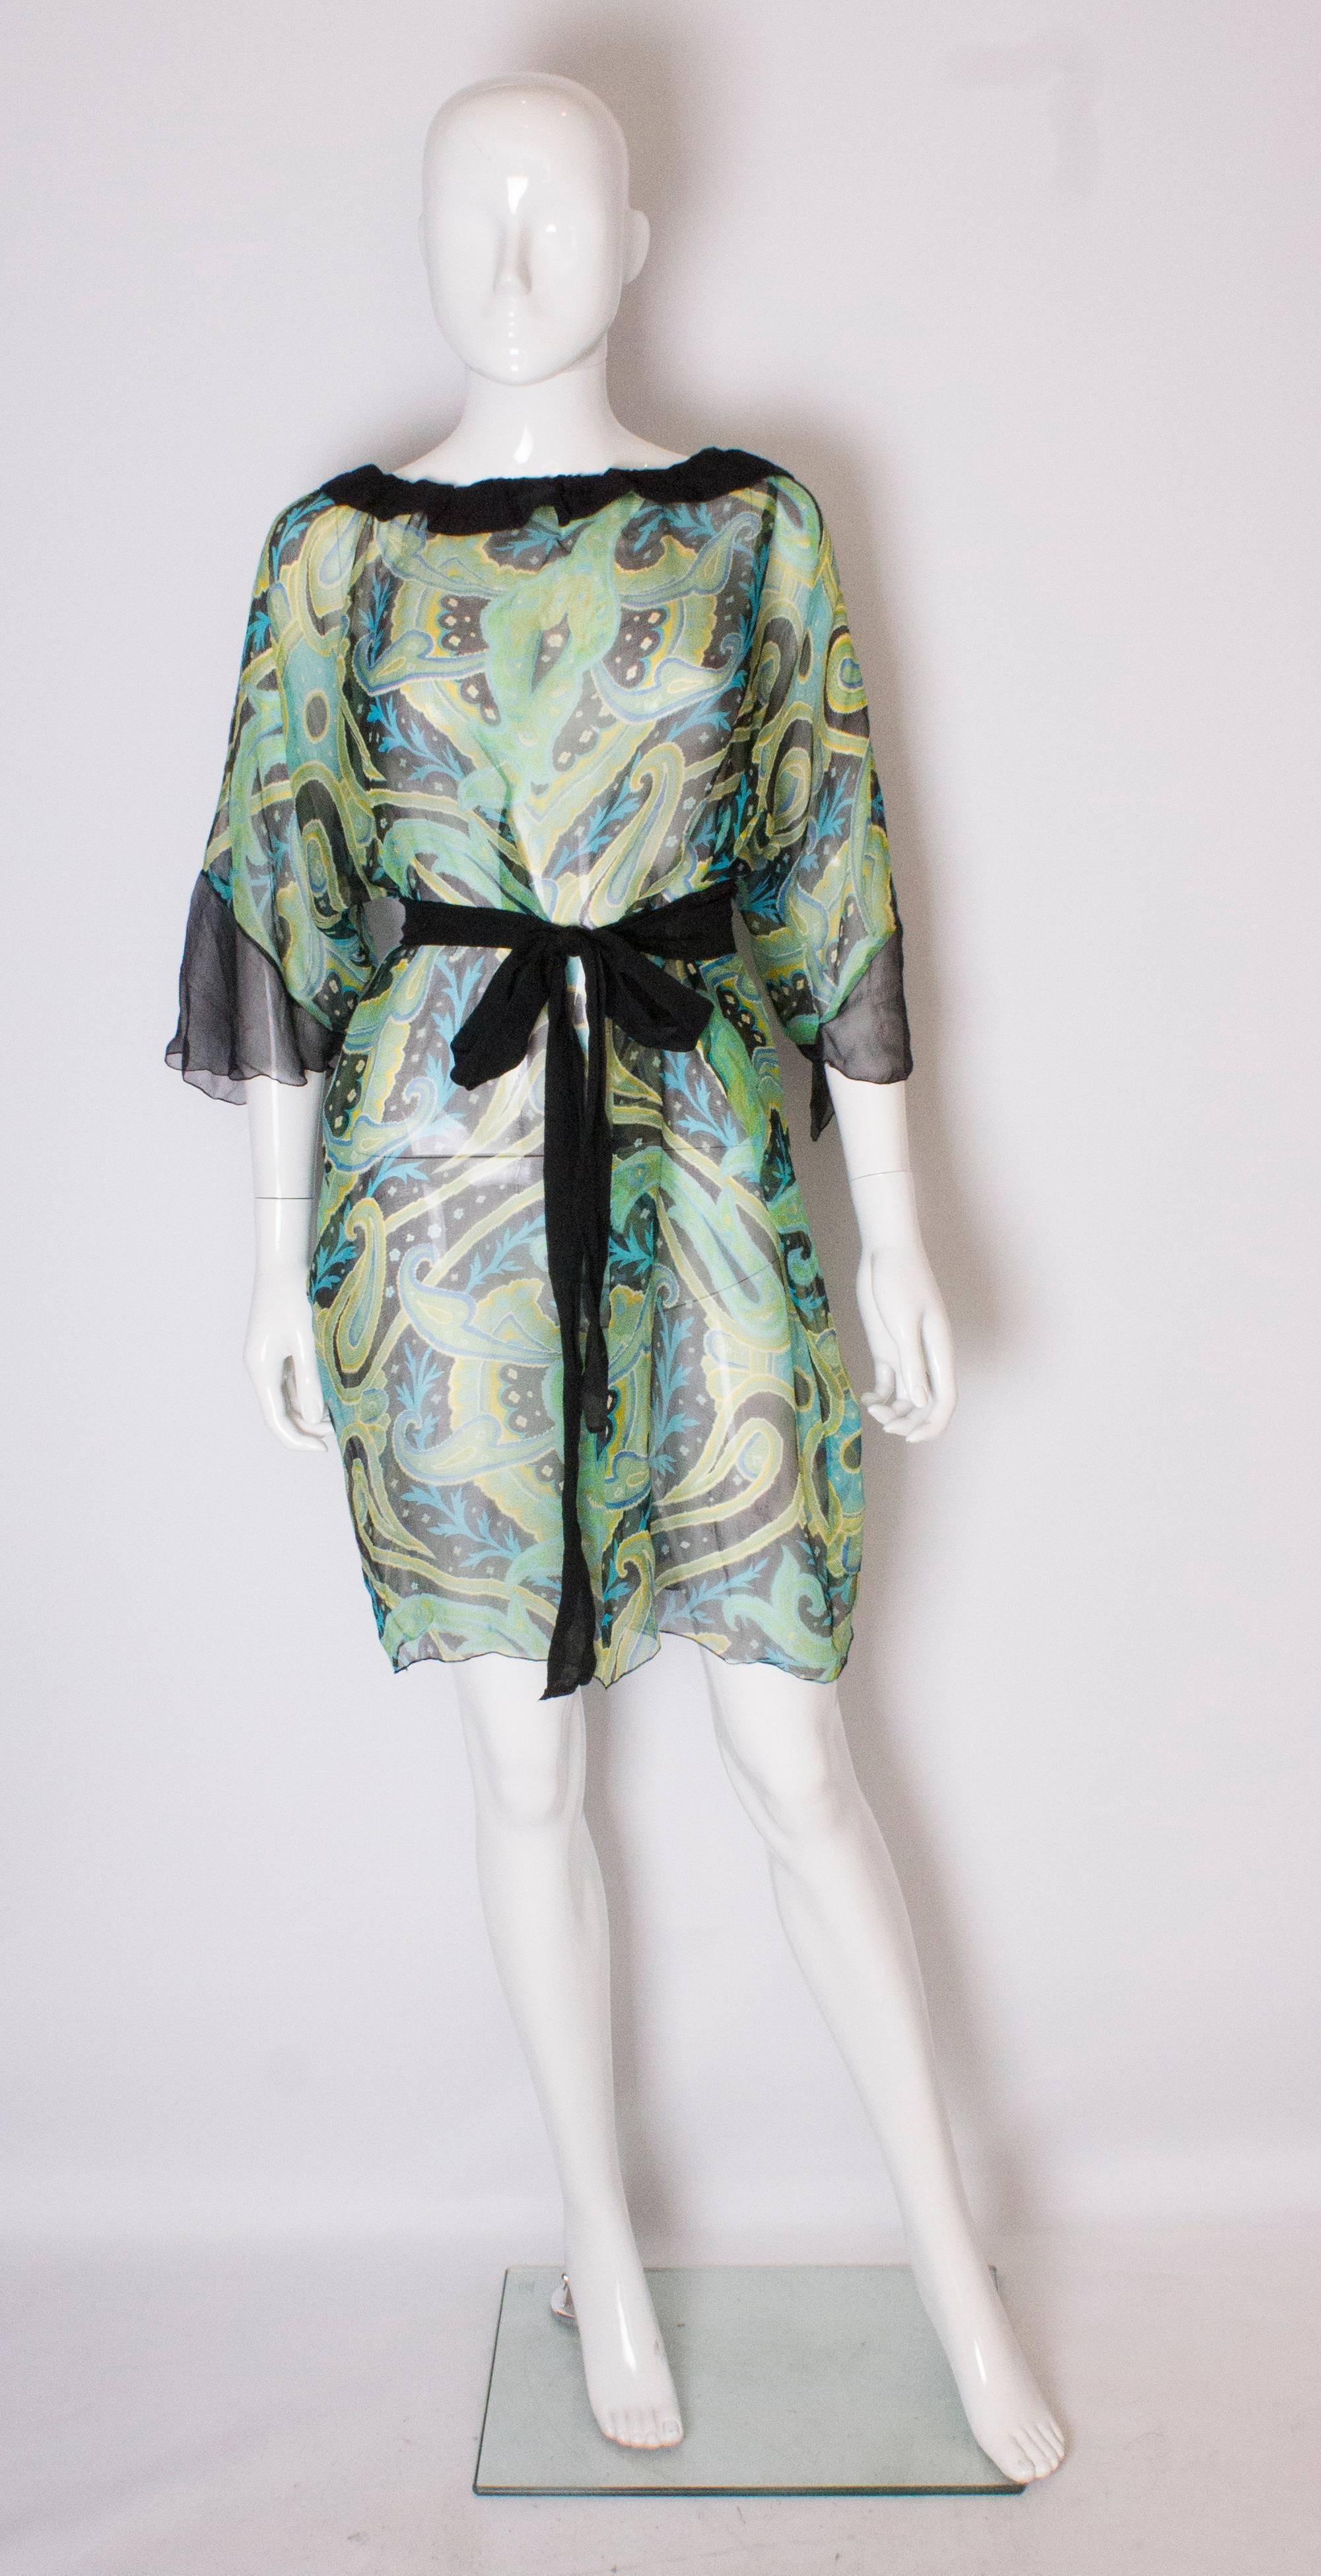 Ein schönes Seidenkleid für den Sommer in einer Mischung aus Grün, Schwarz, Blau und Gelb. Das Kleid hat einen schwarzen Seidenkragen, Manschetten und einen selbstgebundenen Gürtel.